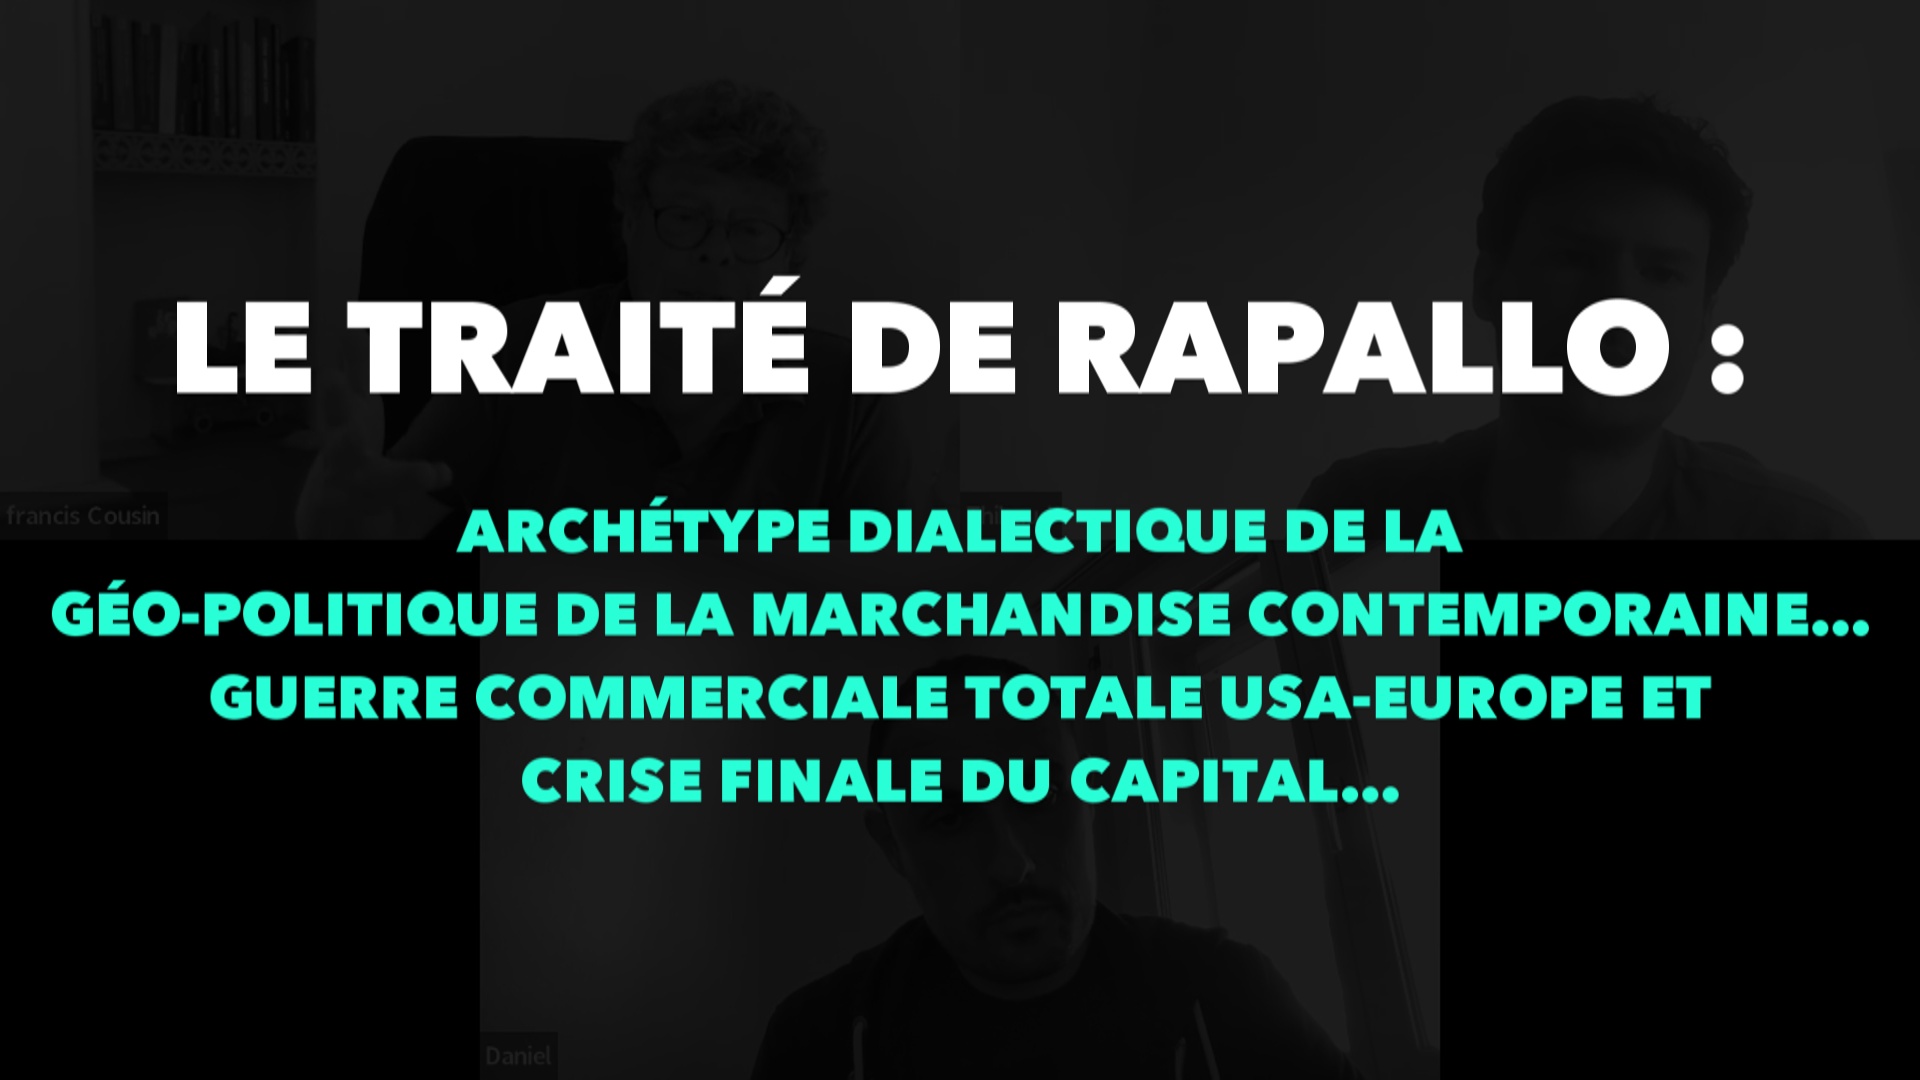 Le traité de Rapallo : Archétype dialectique de la géo-politique de la marchandise contemporaine… Guerre commerciale totale USA-Europe et crise finale du Capital…